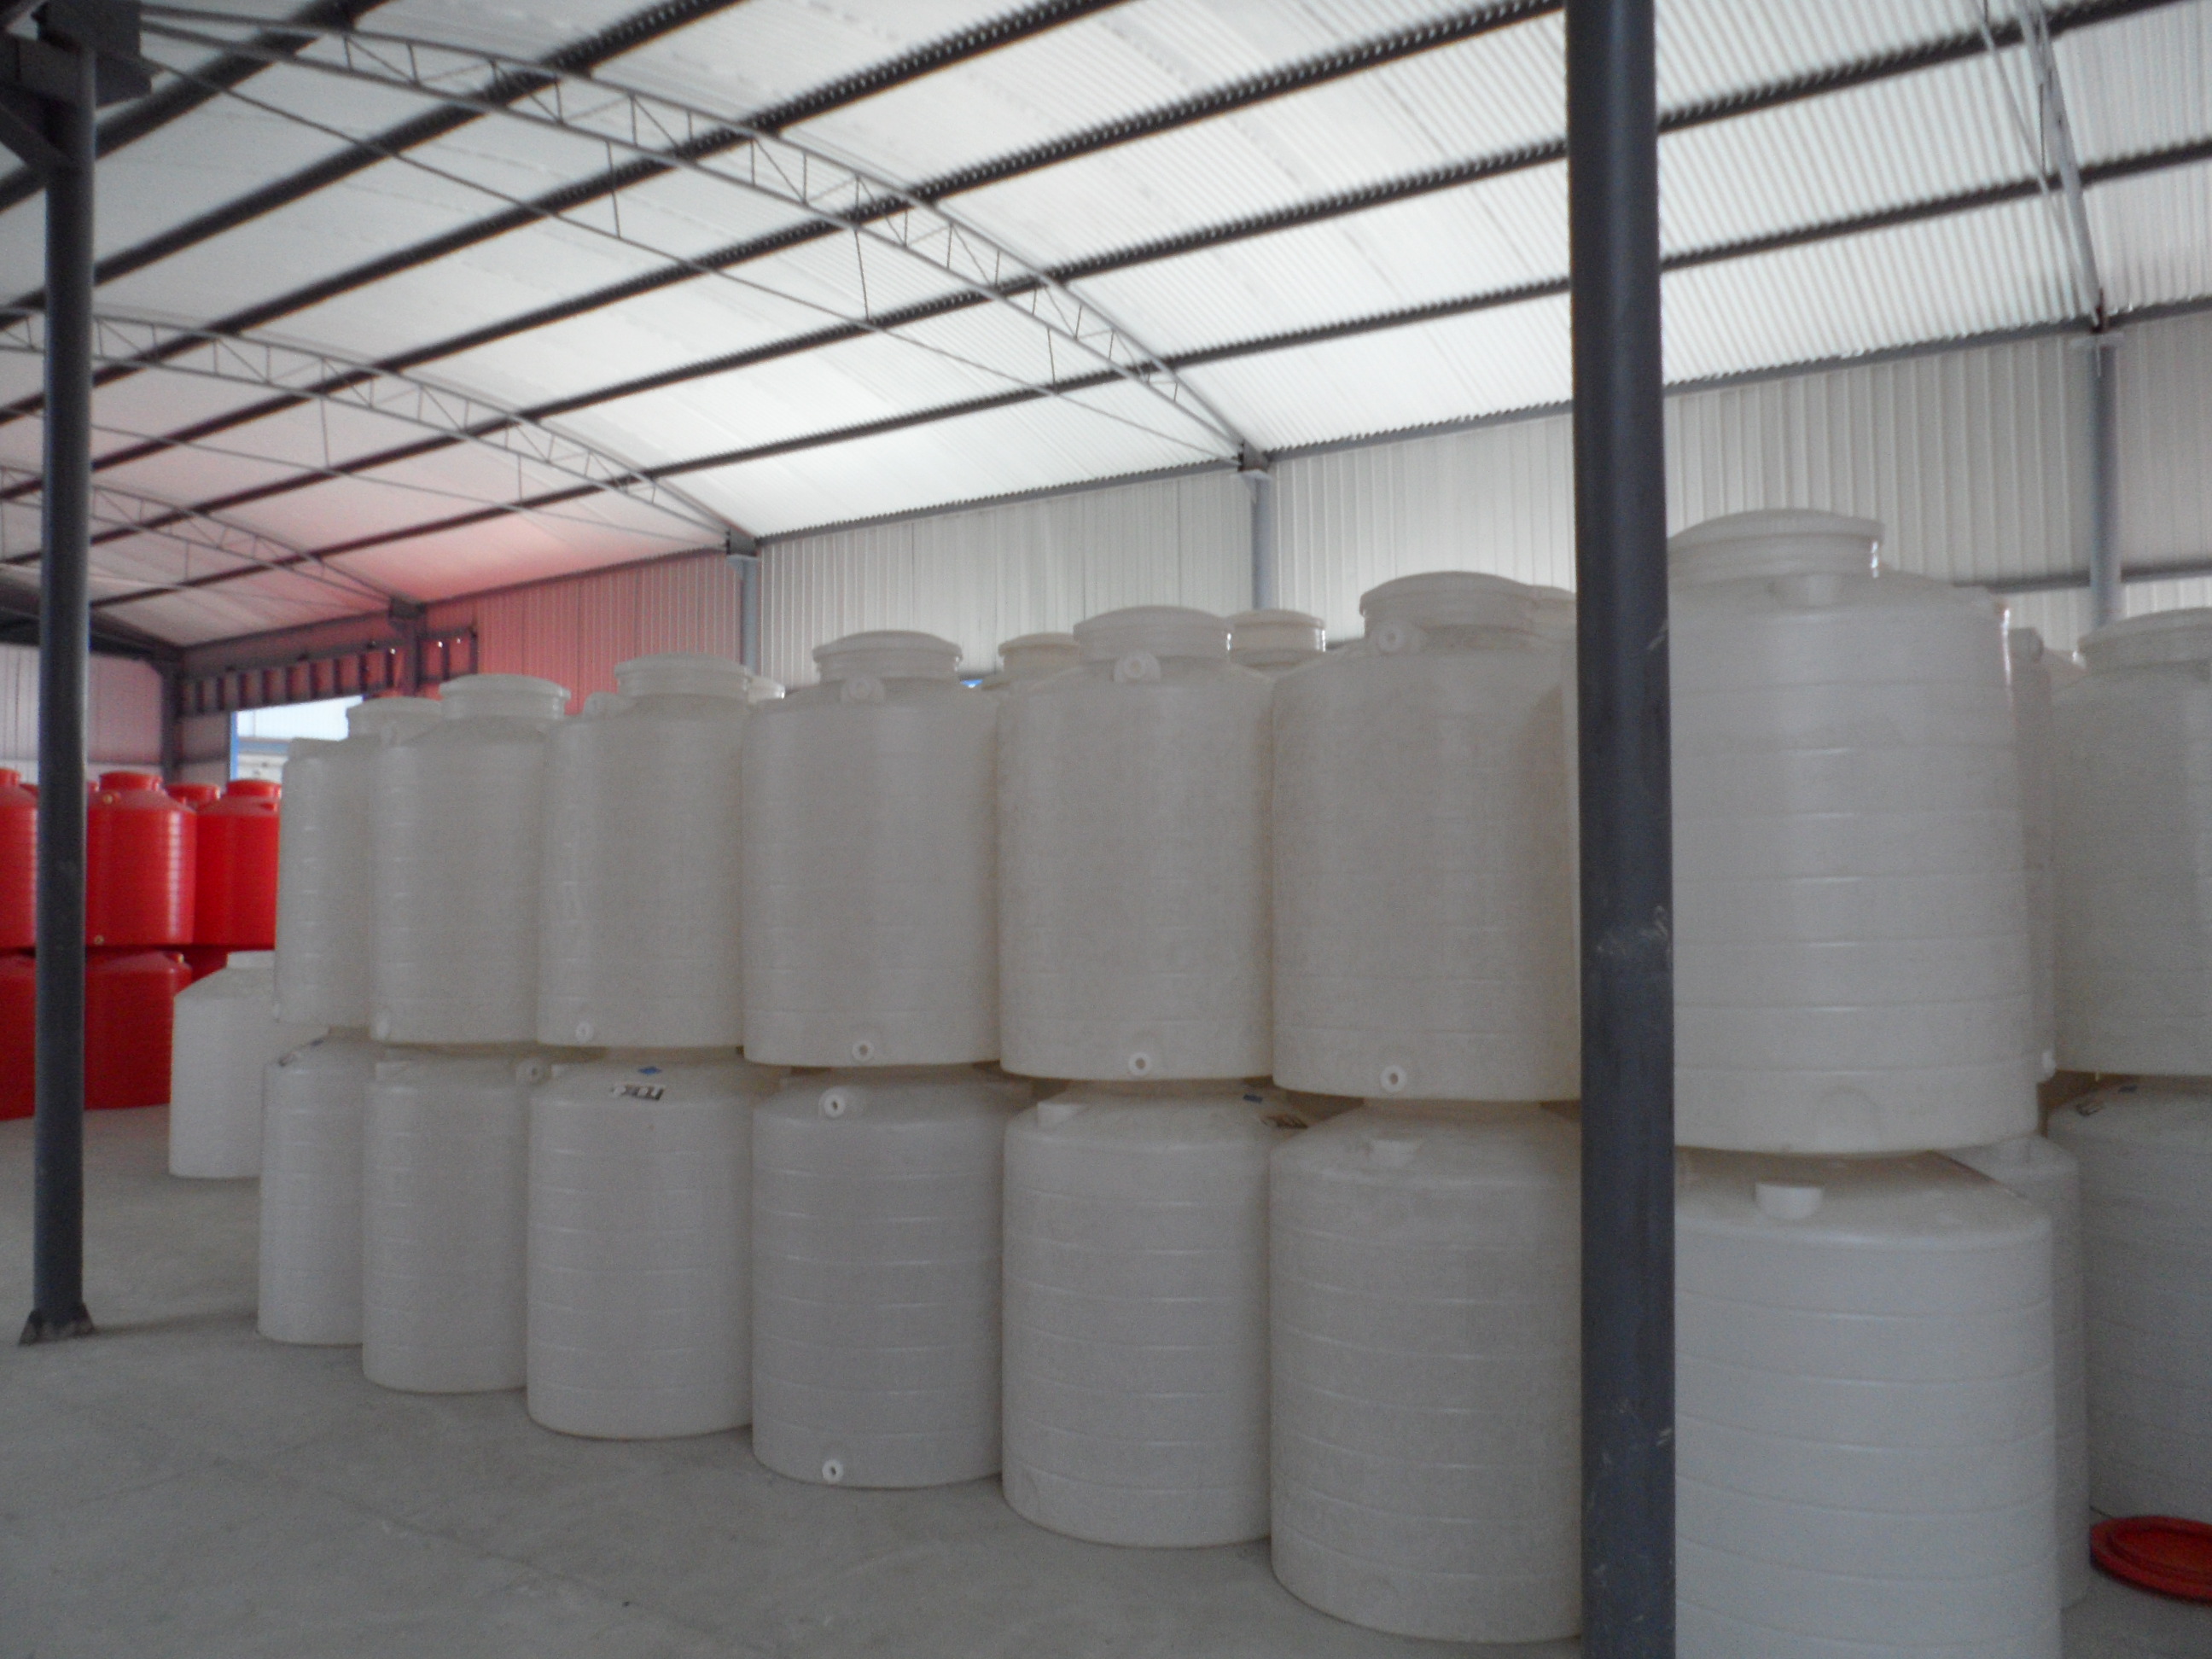 北京大兴塑料水箱厂家有哪些日兴容器供应1吨2吨3吨5吨